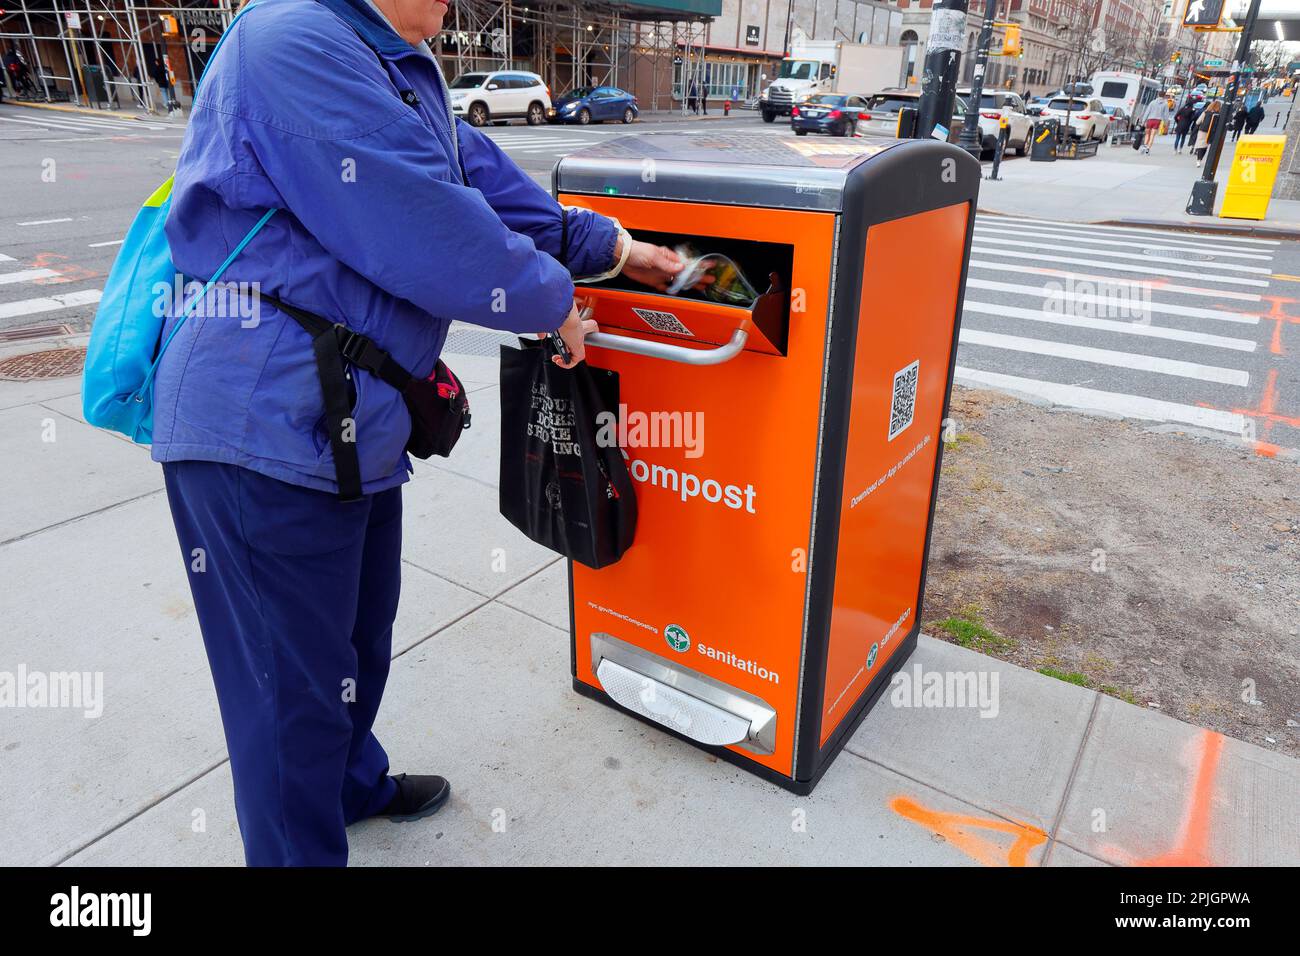 Una persona deposita restos de comida en un contenedor de compost NYC Smart. Los contenedores de reciclaje requieren la aplicación NYC Smart Compost para desbloquear Foto de stock